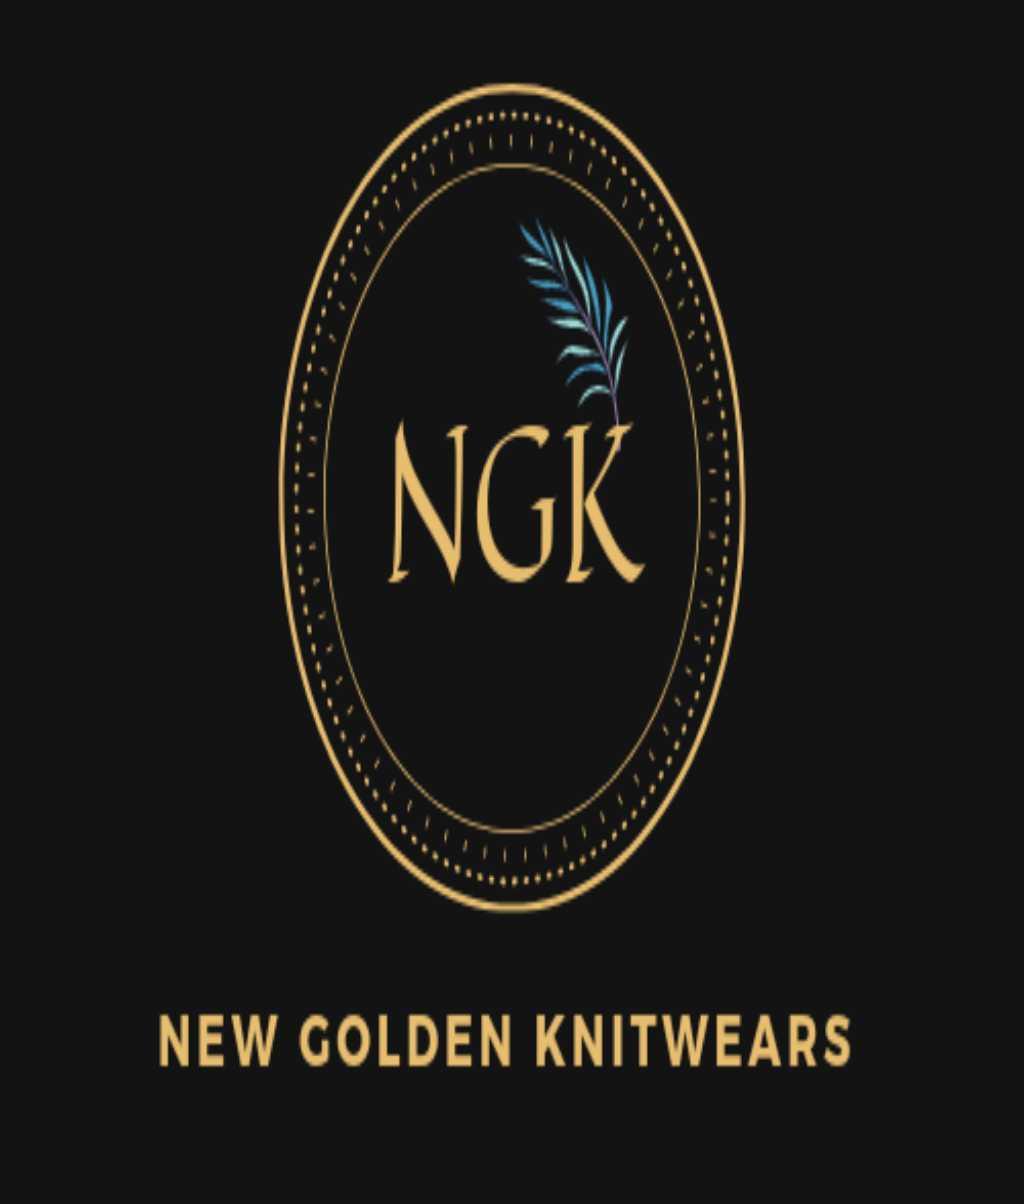 NEW GOLDEN KNITWEARS